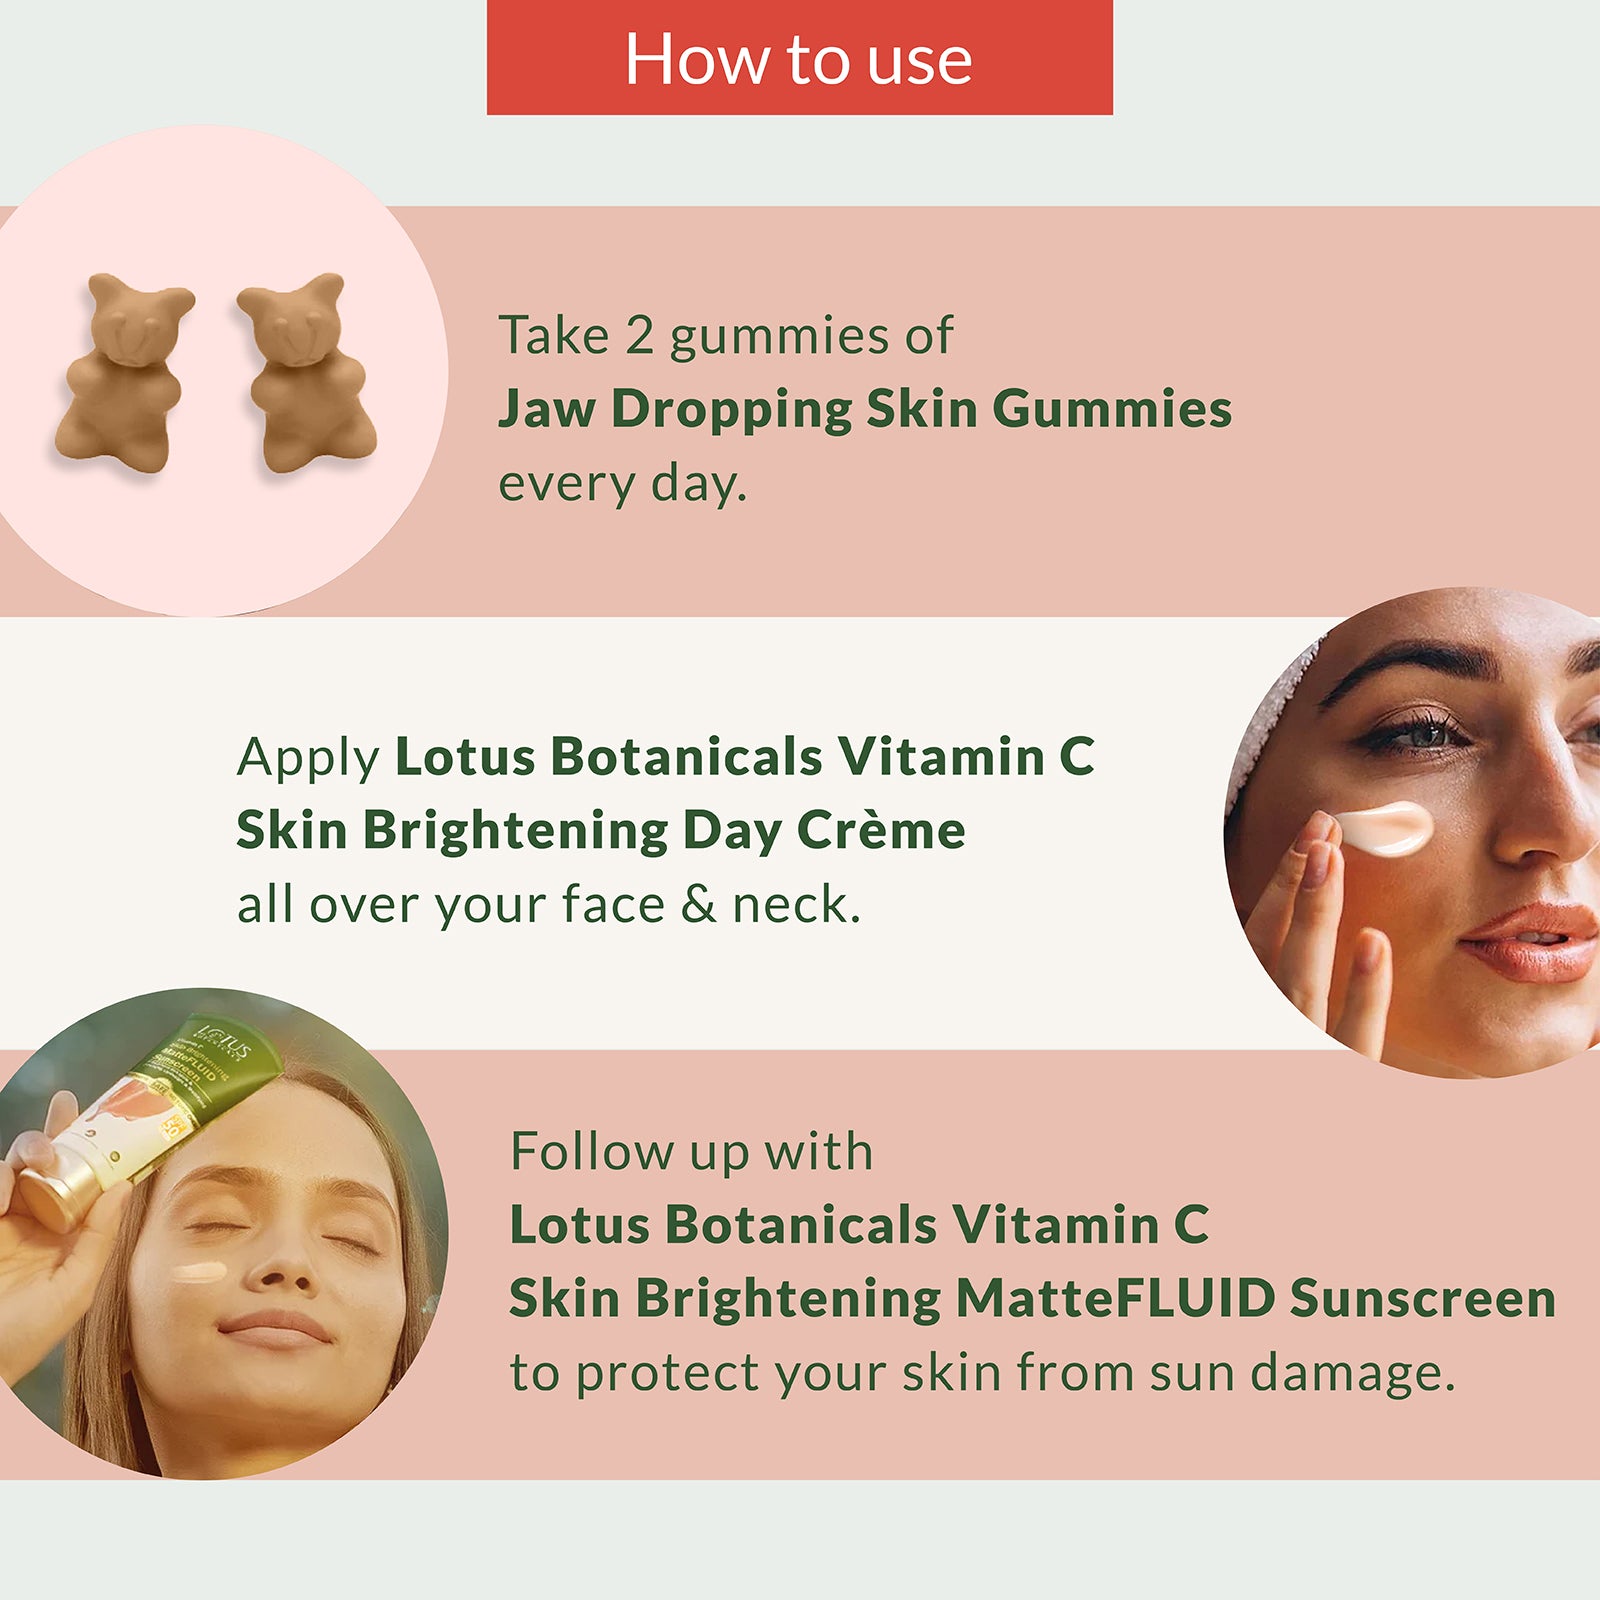 Lotus Botanicals Power Gummies Skin Brightening Kit - A set of skin brightening gummies by Lotus Botanicals